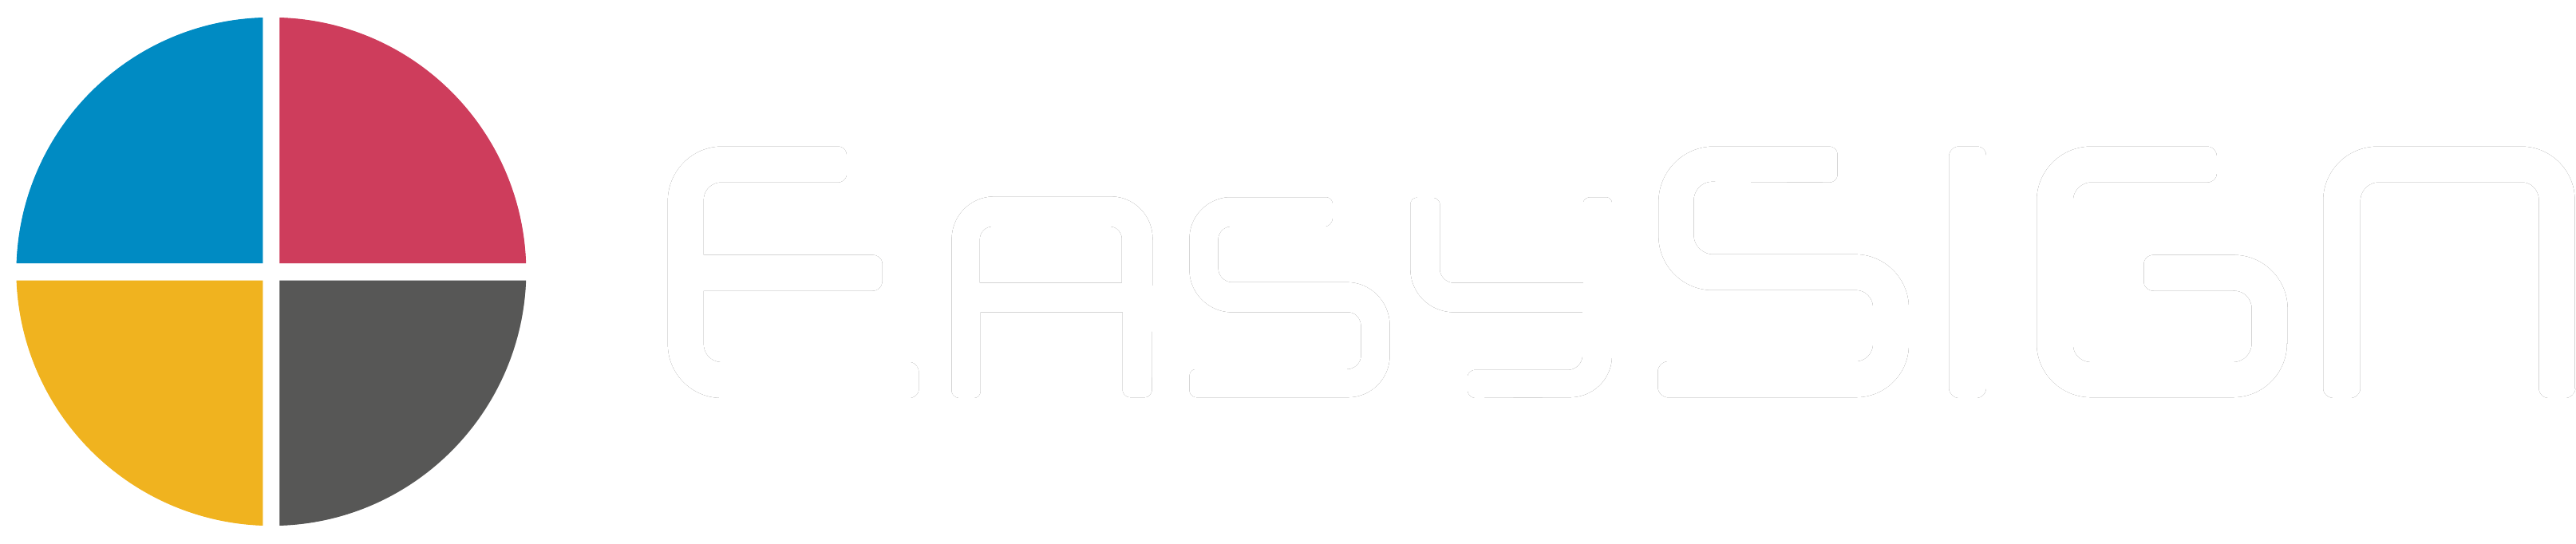 EasySIGN – Professionelle Grafik- und Folienschnittsoftware